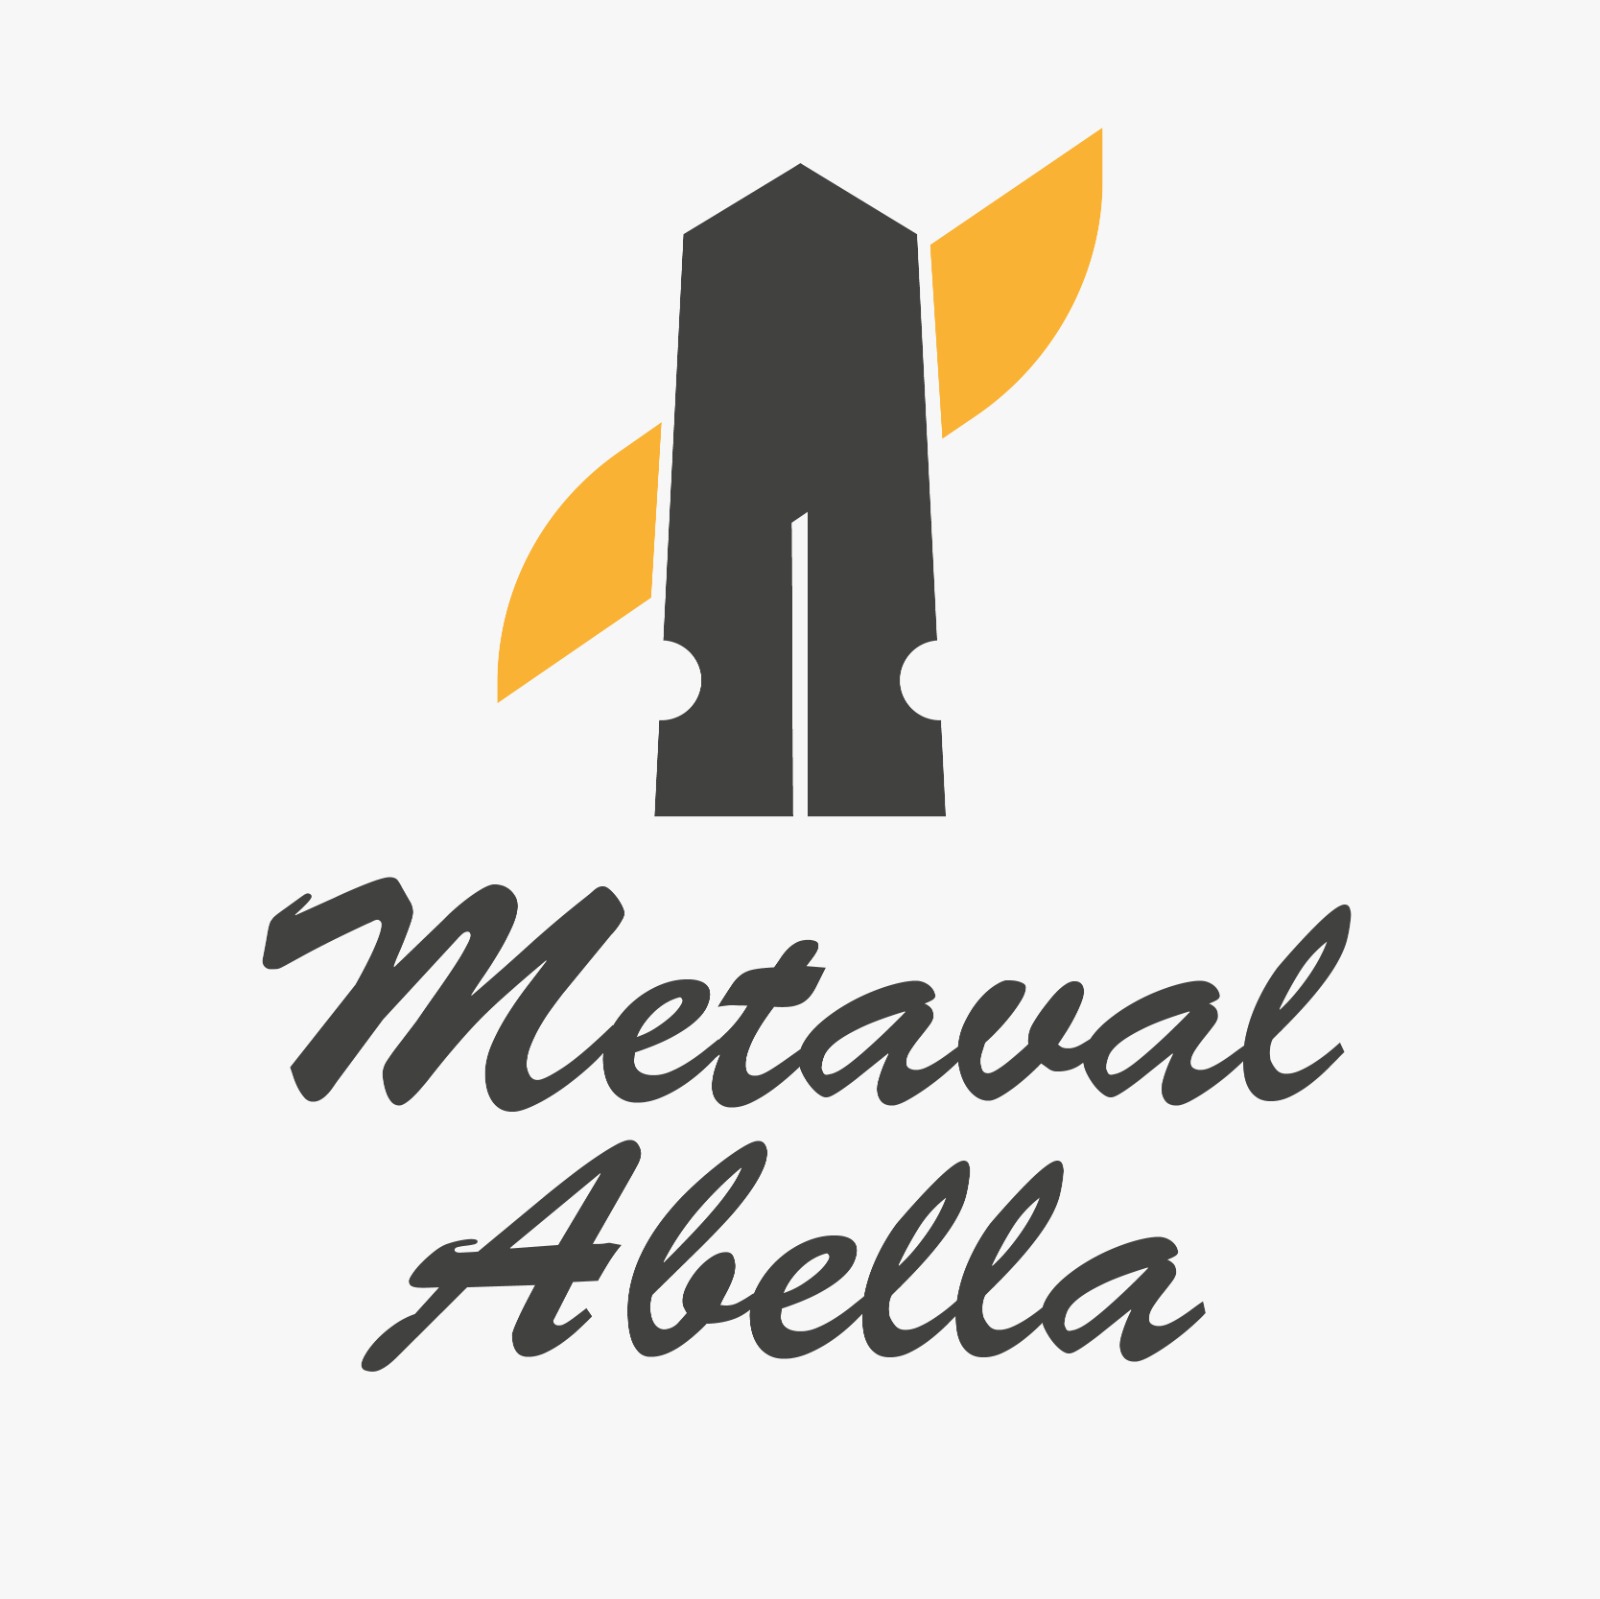 LOGO METALAVELLA - Metaval Abella